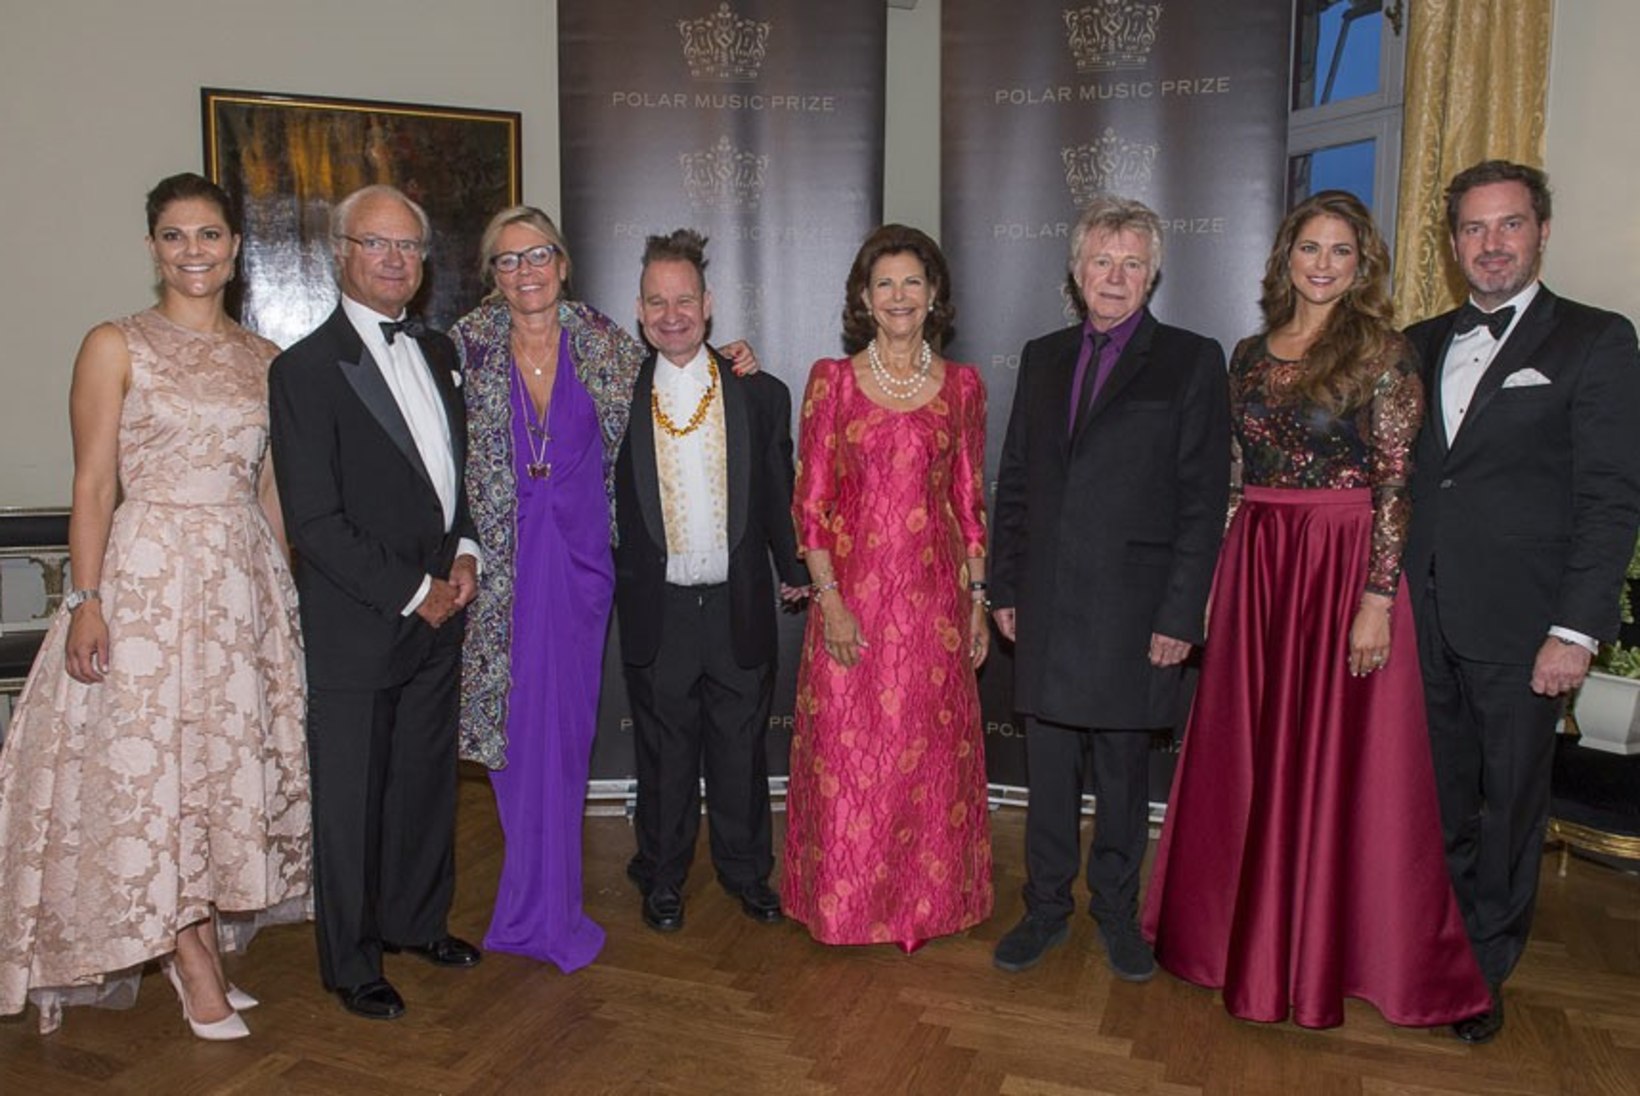 GALERII: Rootsi kuningapere jagas Stockholmis auhindu